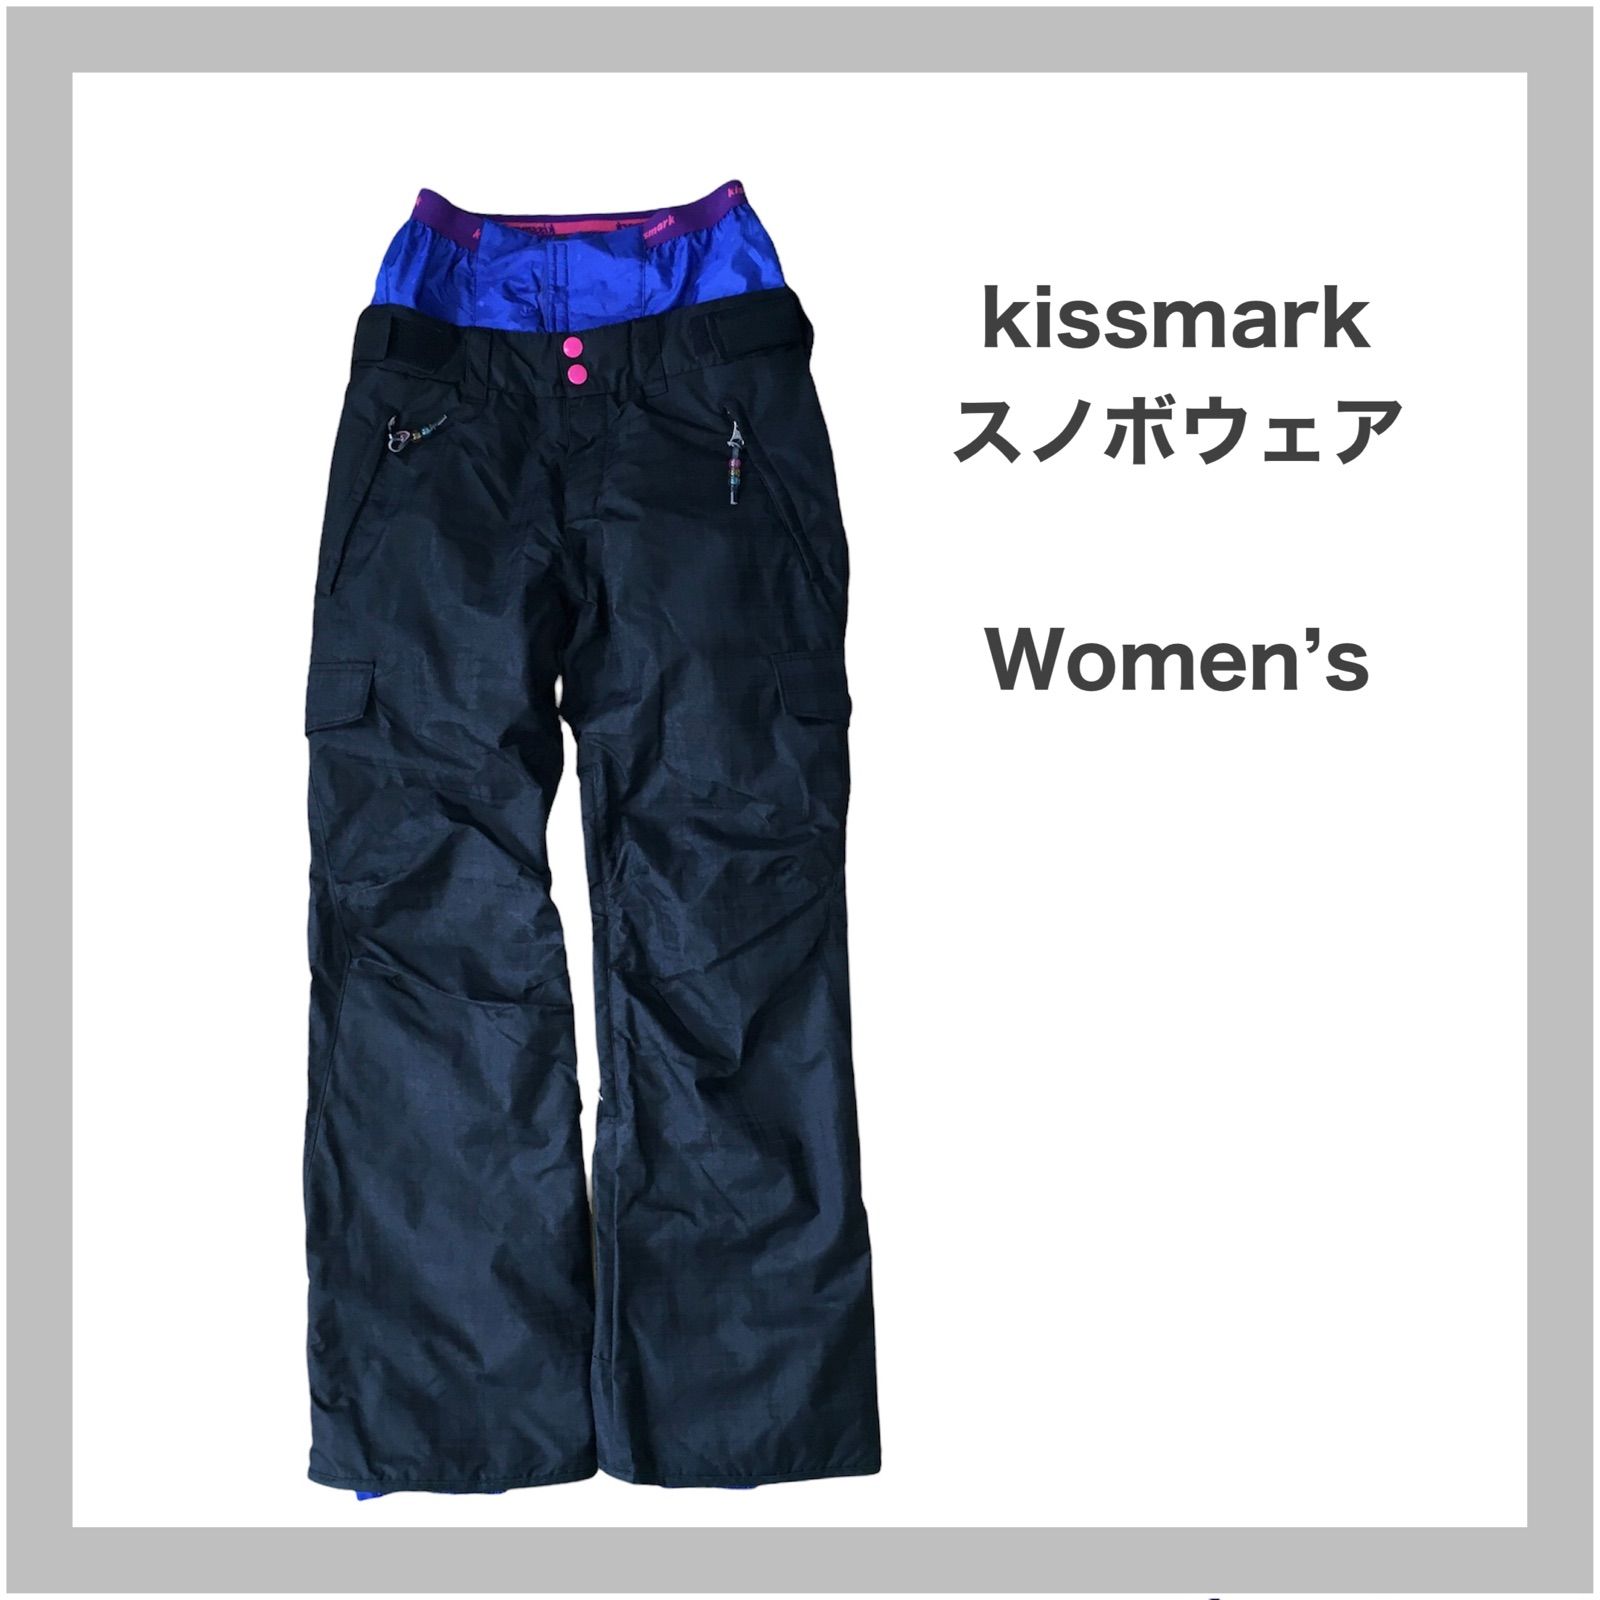 kissmark キスマーク スキーウェア スノボウェア パンツ スノボ L 